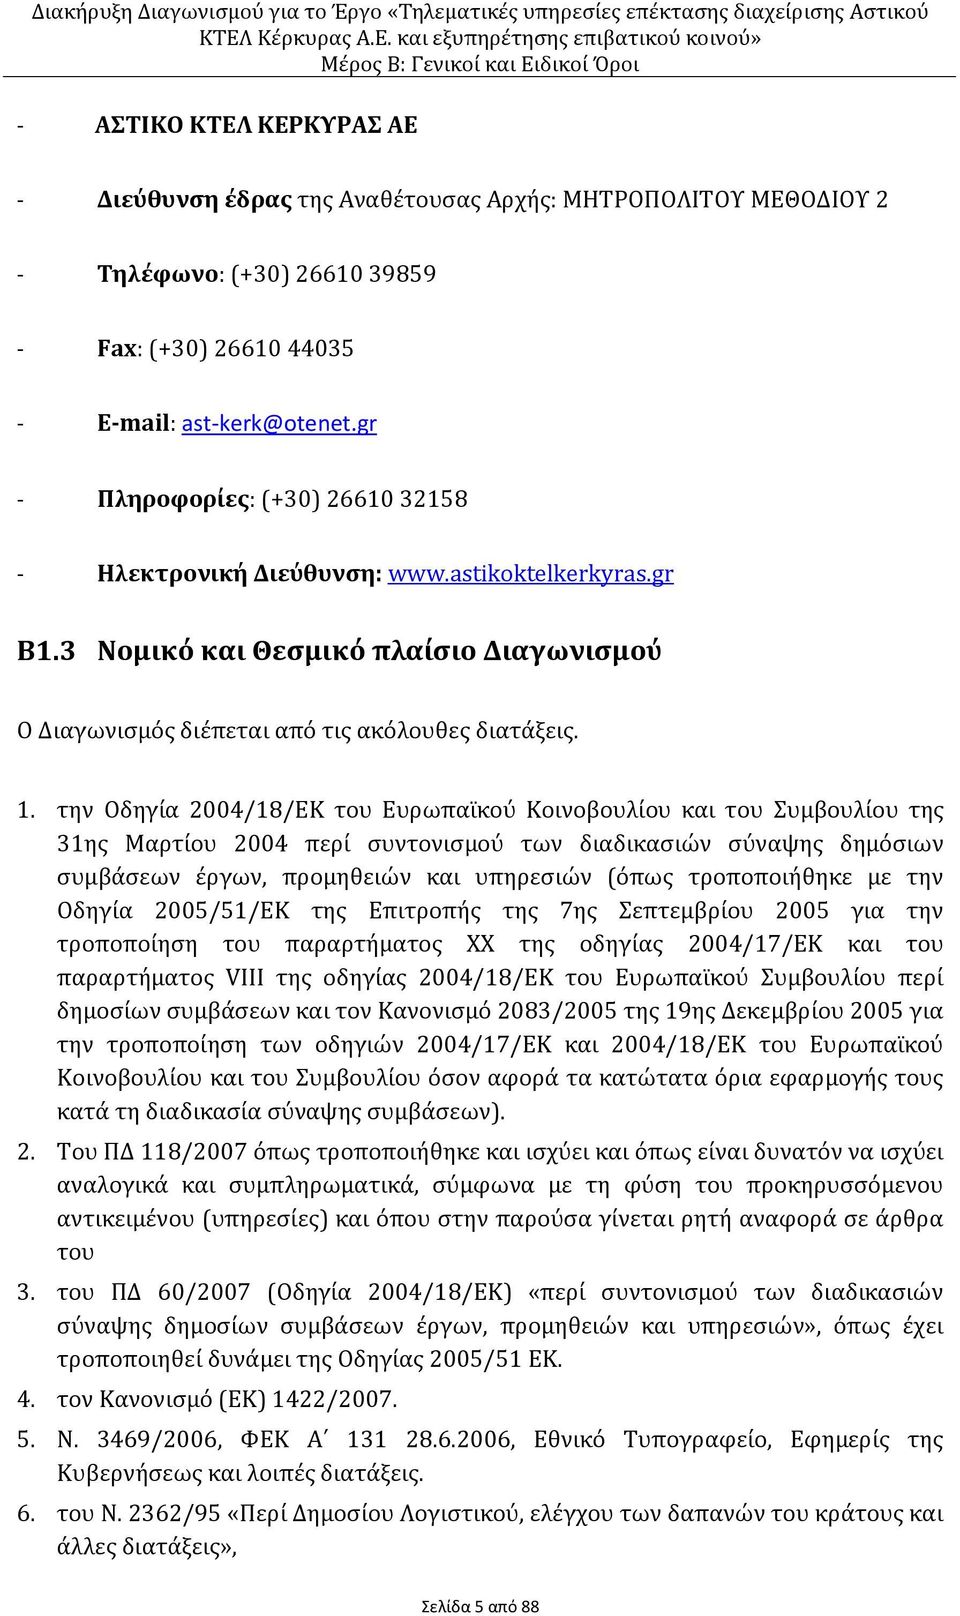 την Οδηγία 2004/18/ΕΚ του Ευρωπαϊκού Κοινοβουλίου και του Συμβουλίου της 31ης Μαρτίου 2004 περί συντονισμού των διαδικασιών σύναψης δημόσιων συμβάσεων έργων, προμηθειών και υπηρεσιών (όπως